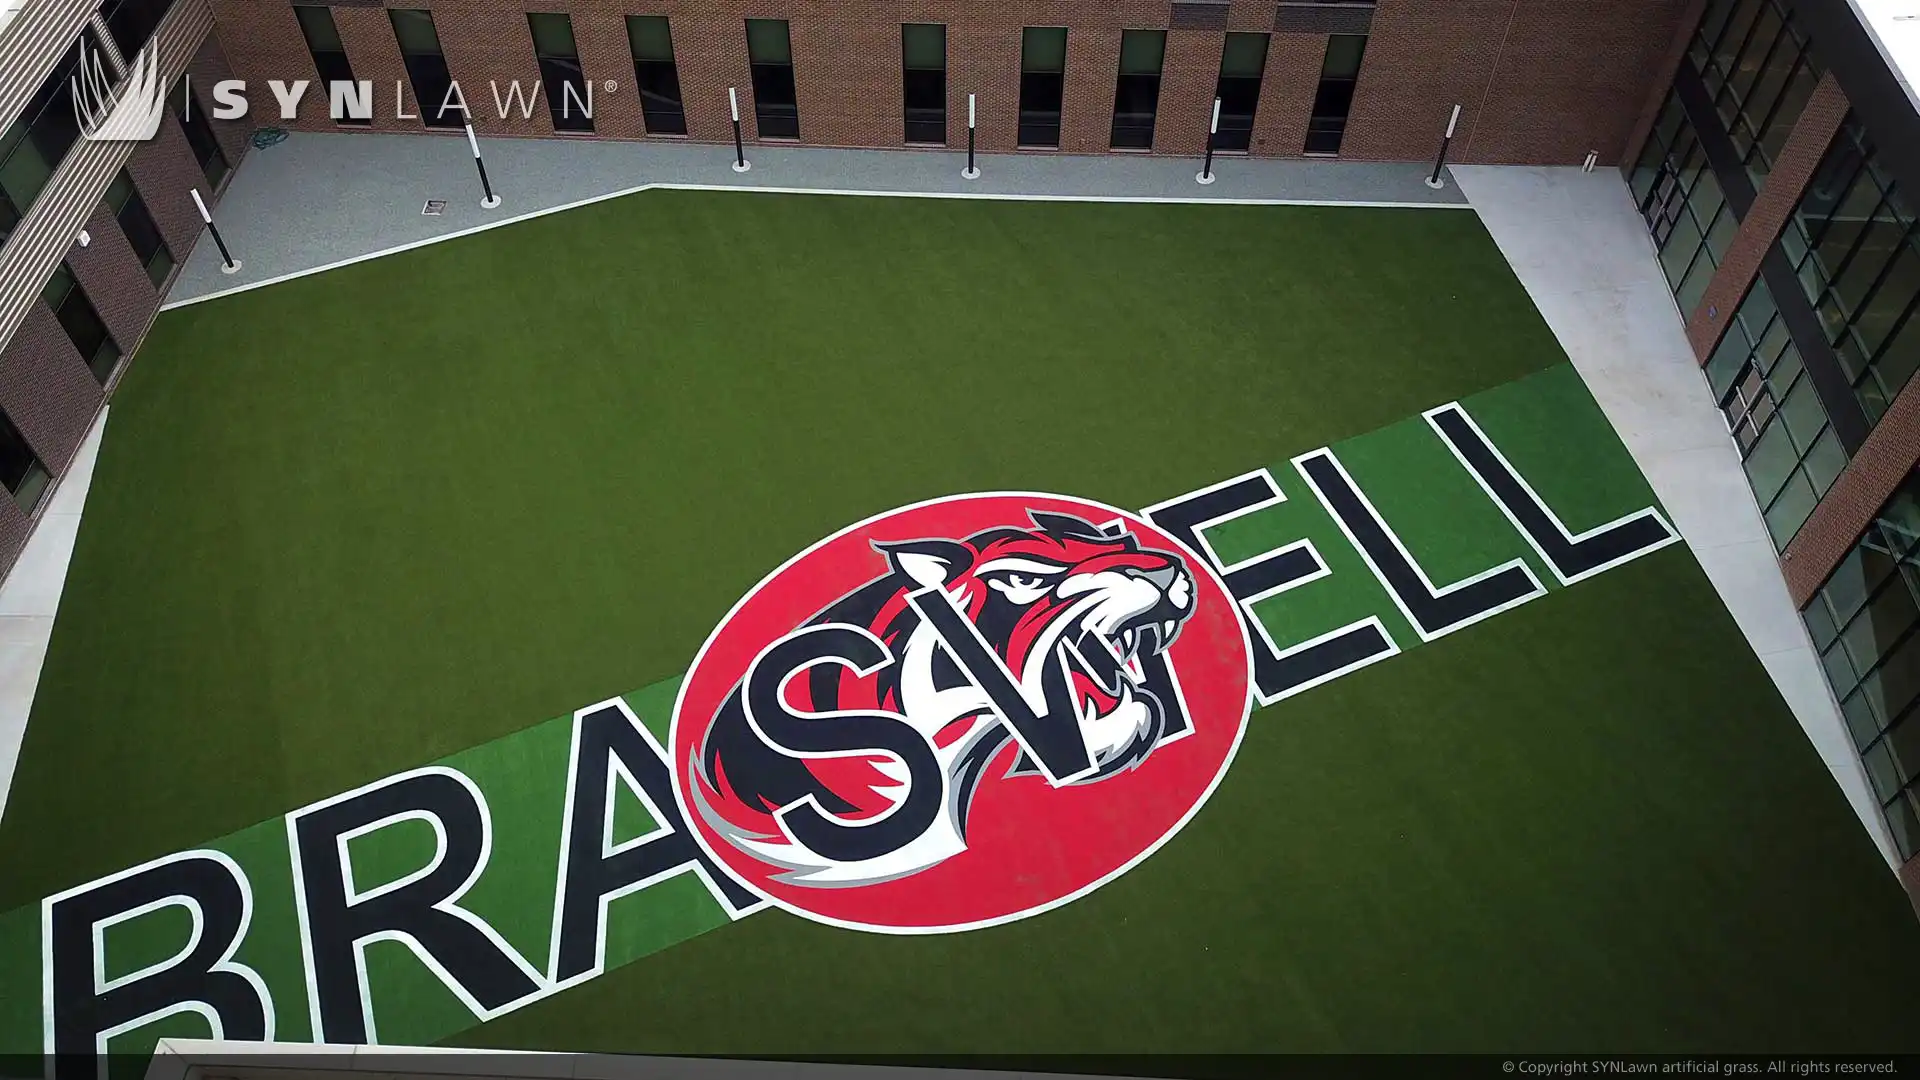 تعمل مدرسة تكساس الثانوية على رفع مستوى الصورة من خلال شعارات العشب المرصعة ومناطق التسجيل متعددة الاستخدامات